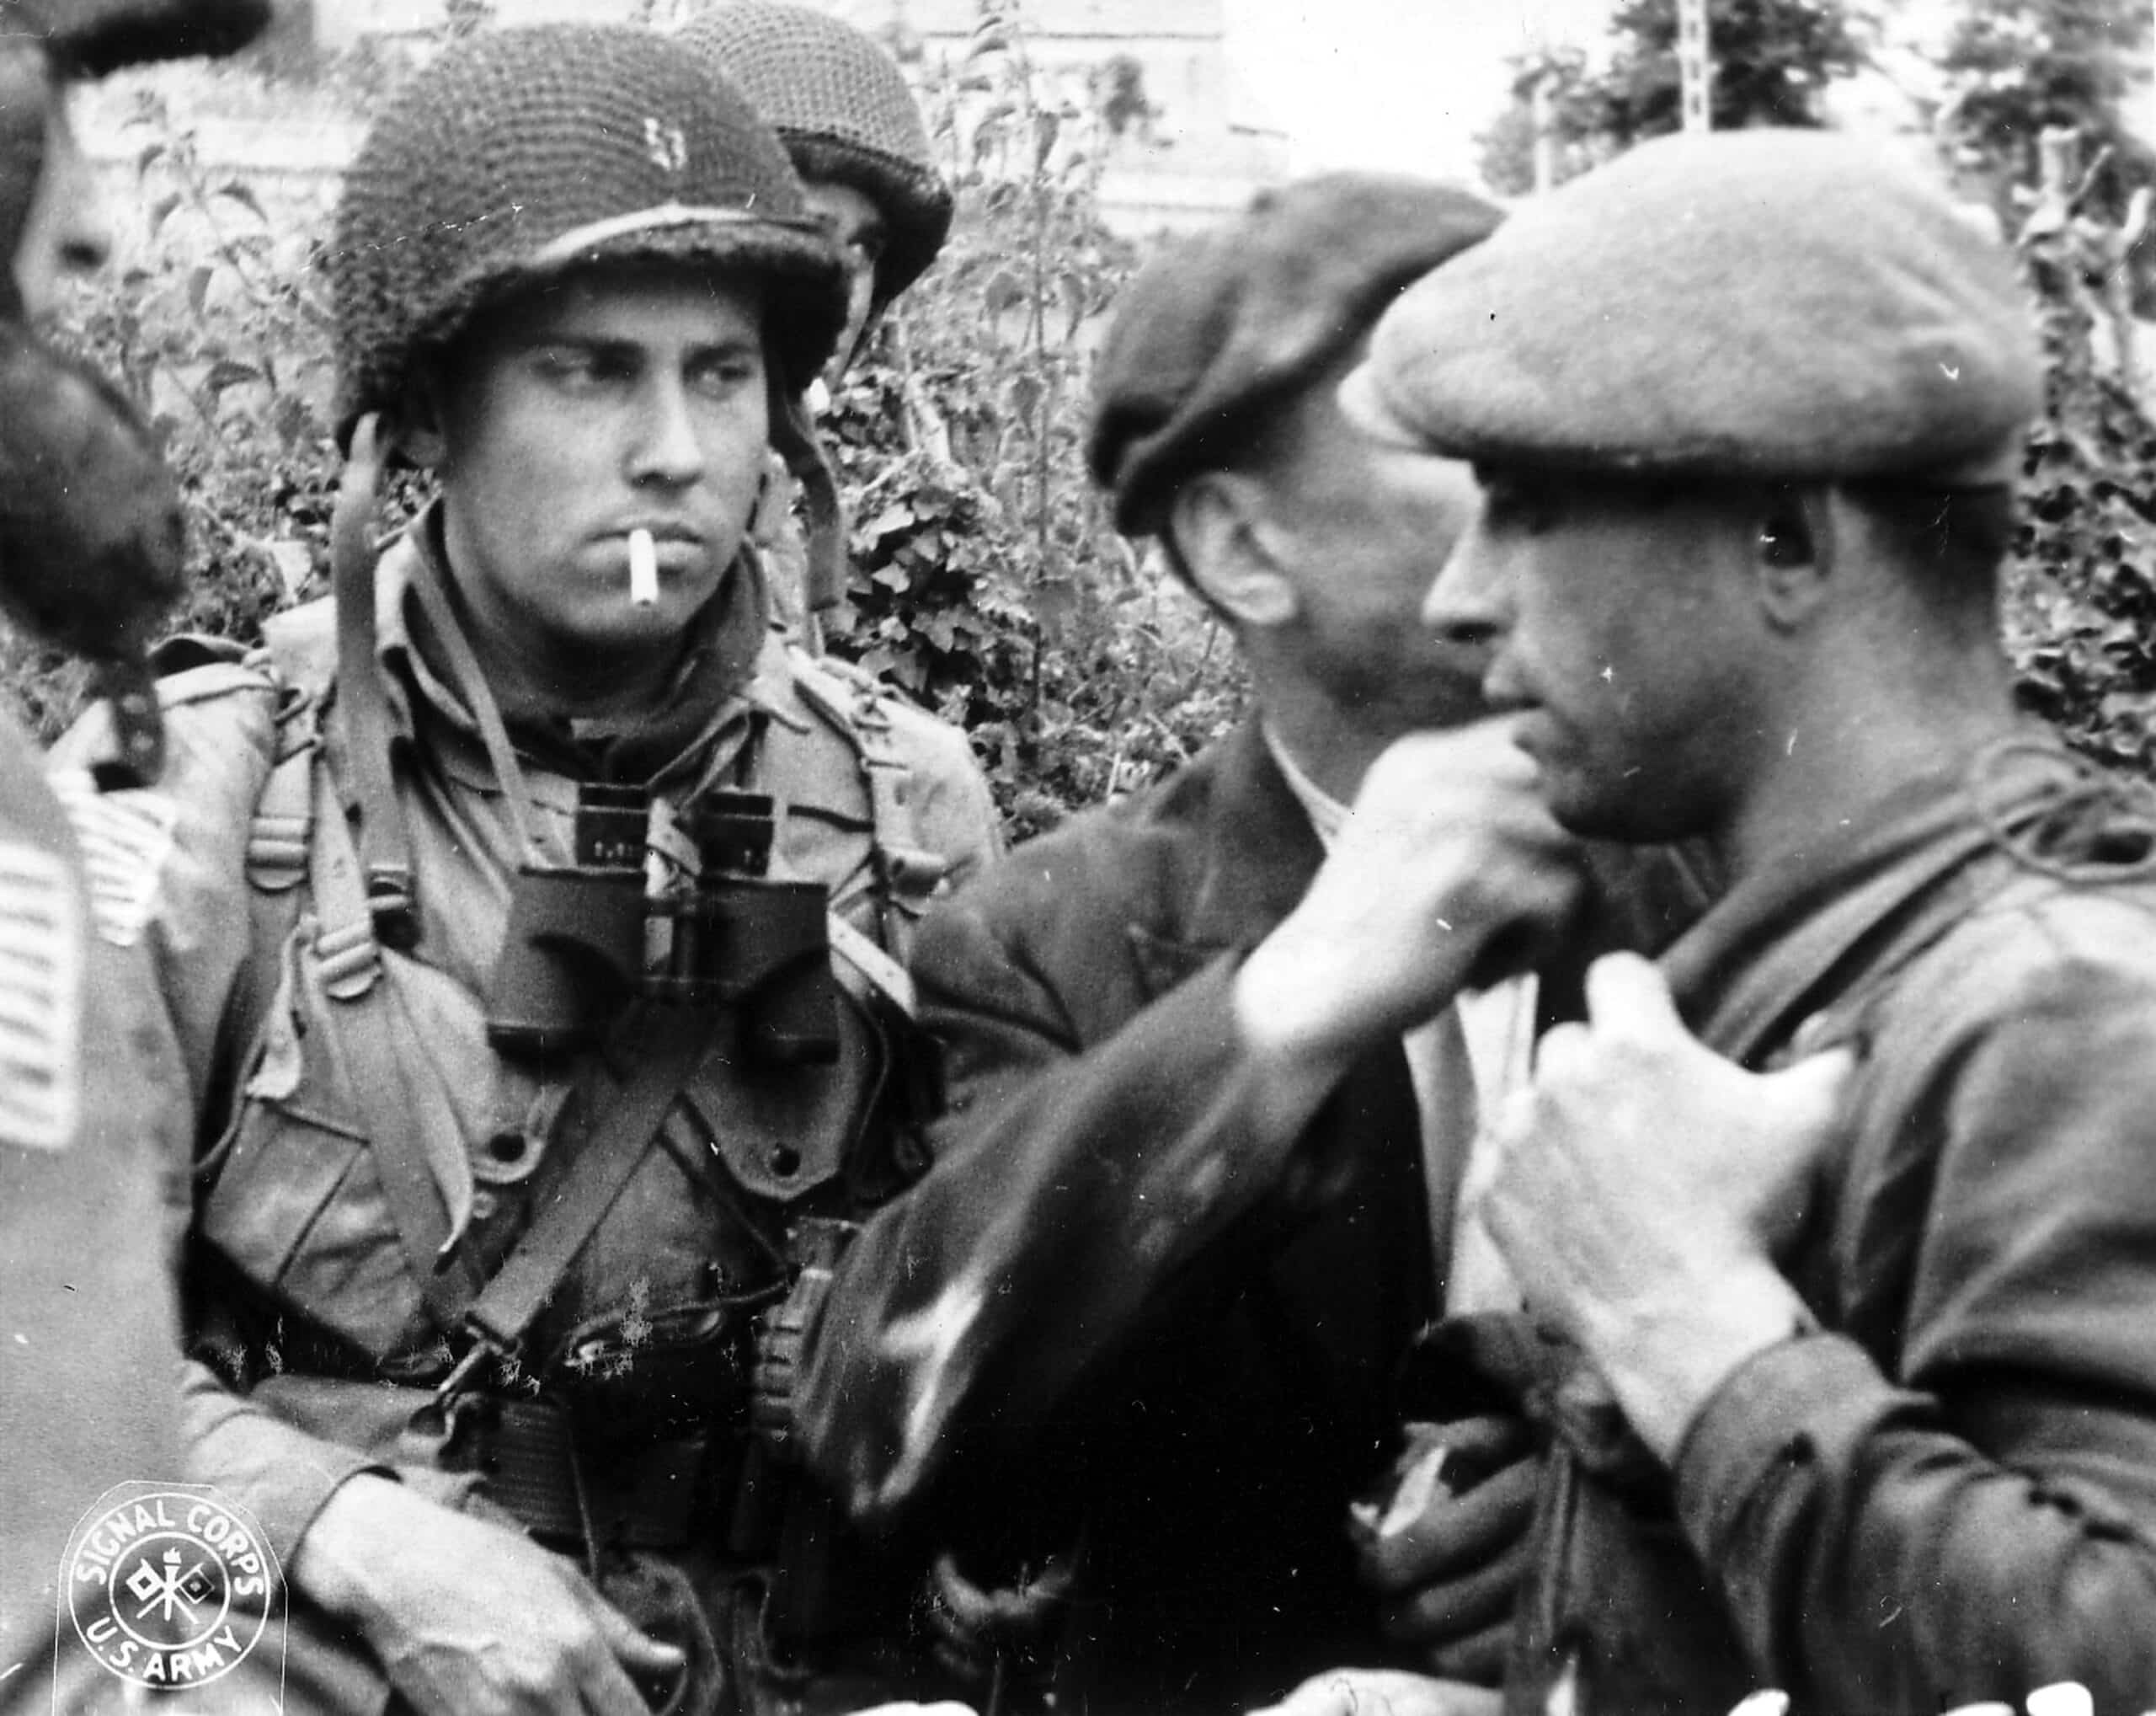 Des membres de la Résistance française et de la 82e division aéroportée américaine discutent de la situation pendant la bataille de Normandie en 1944